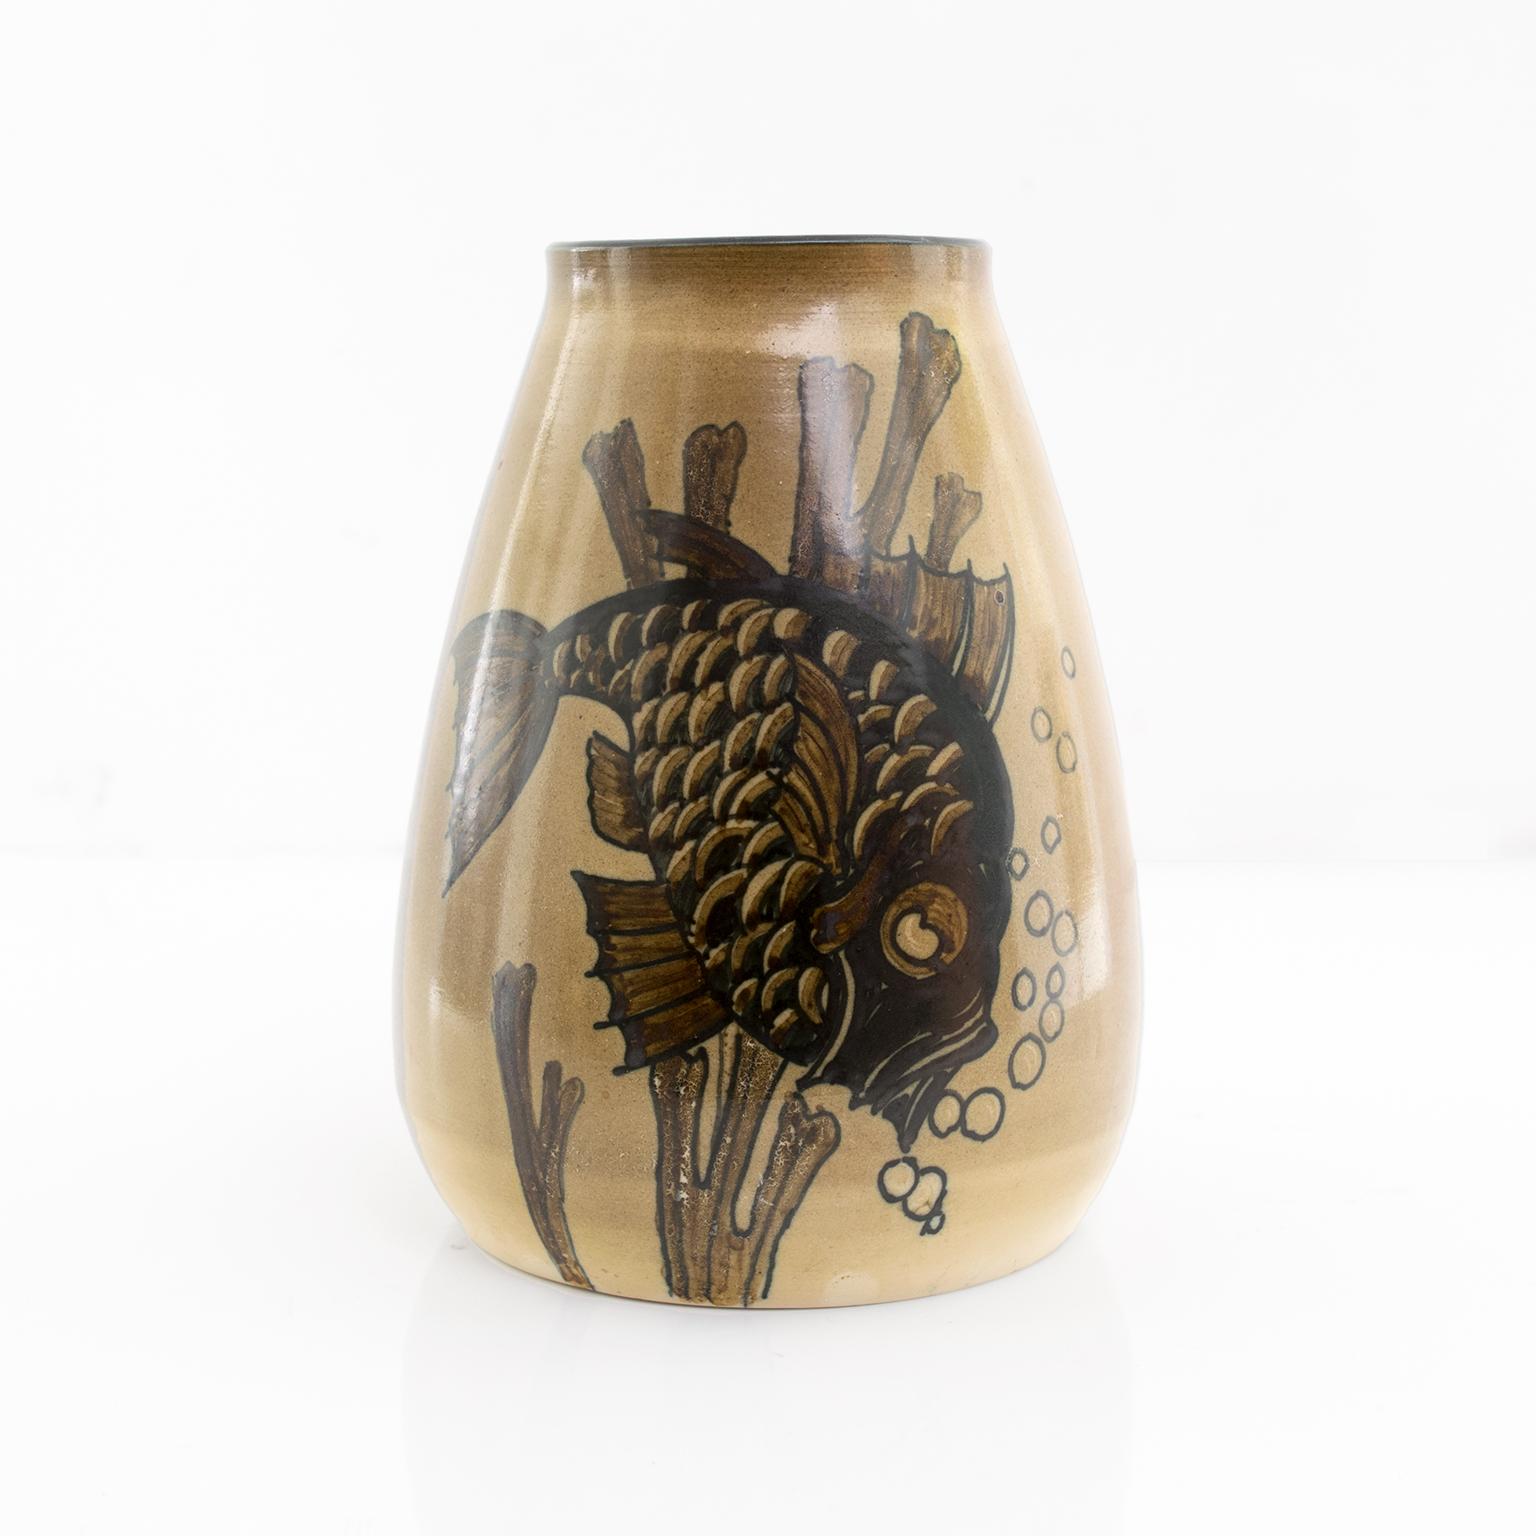 Vase Art déco suédois unique, moderne et scandinave, tourné et décoré à la main par Josef Ekberg, représentant un poisson sous l'eau. Fabriqué à Gustavsberg, vers 1930.

Mesures : Hauteur : 7,75